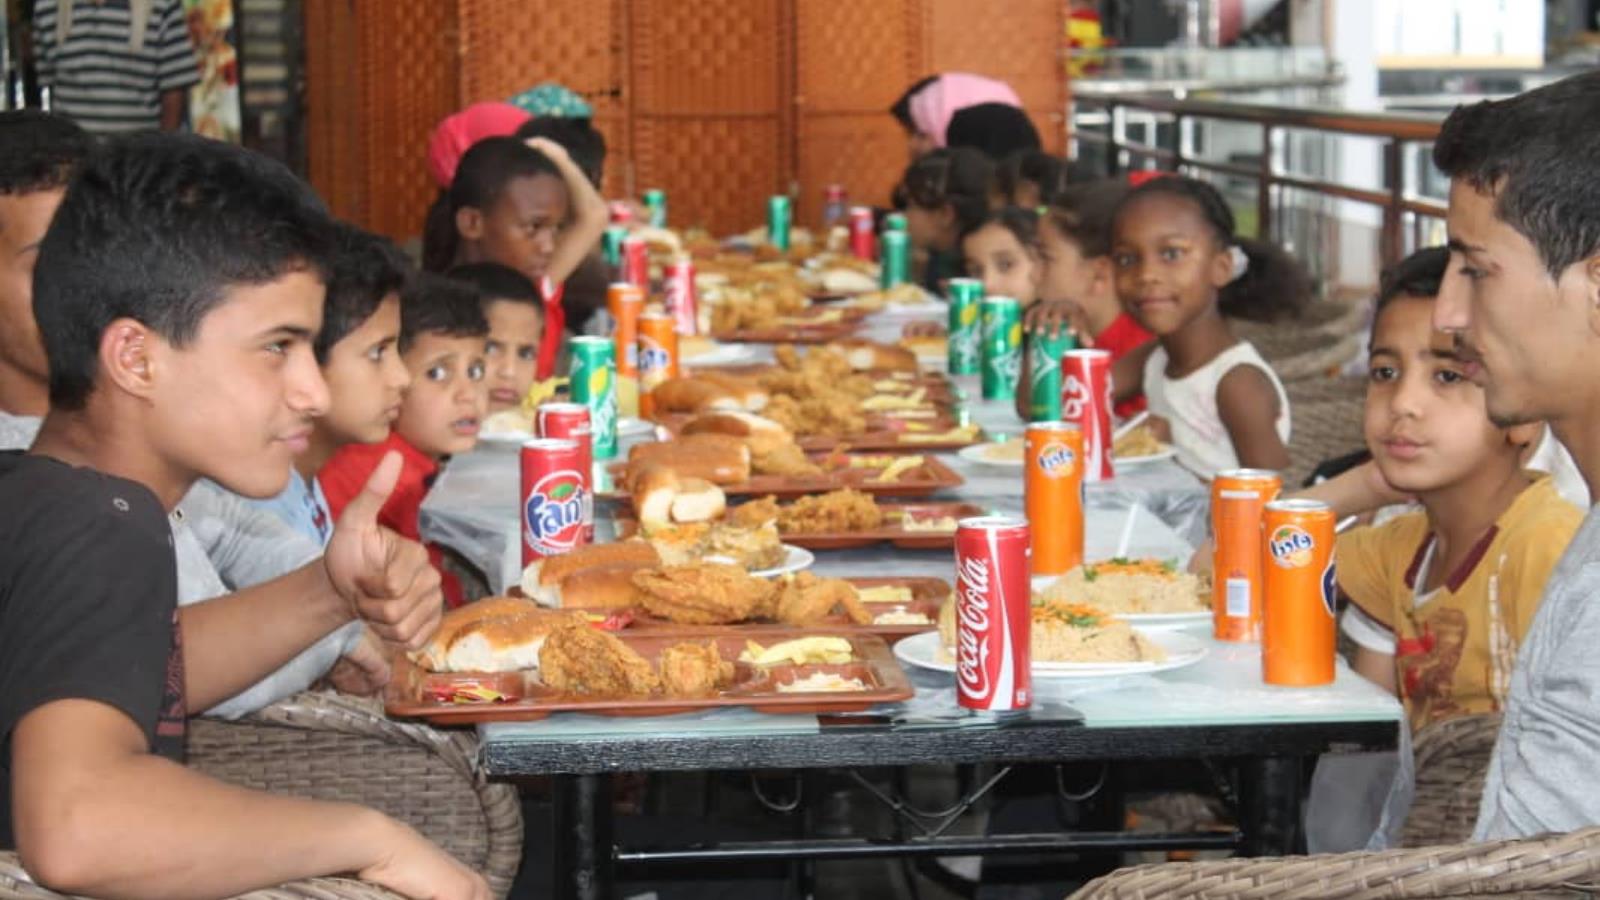 ‪تحاول بعض الجمعيات العمل بجهود محدودة لإطعام أطفال في مؤسسة تُعنى بتنمية اليتيم‬ (الجزيرة)